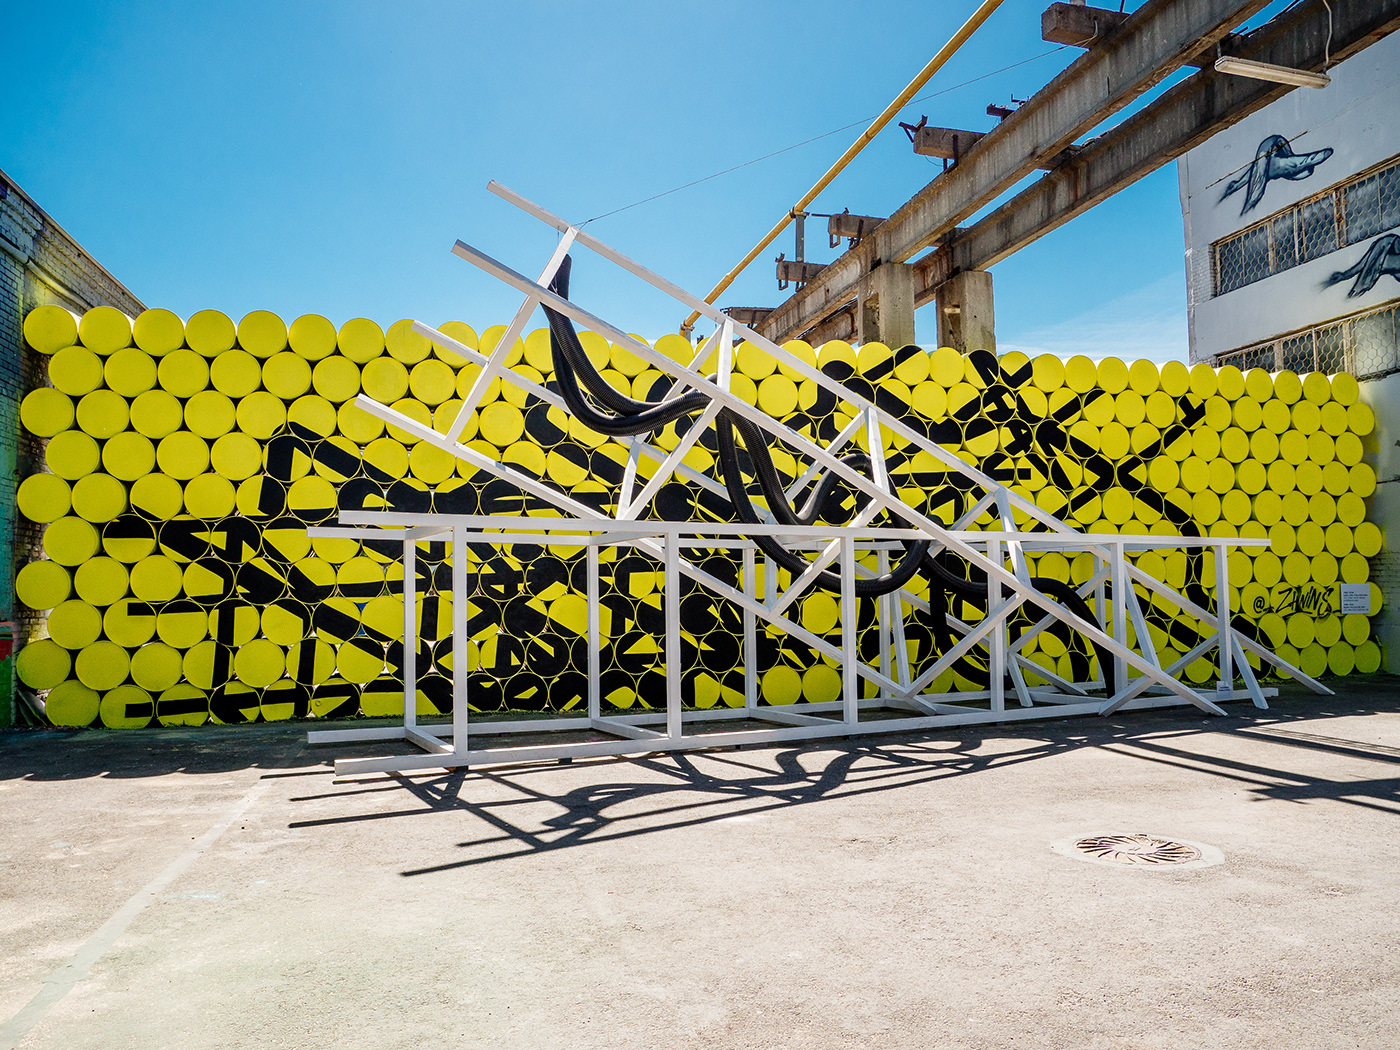 архитектура publicart стрит-арт инсталляции желтый Graffiti